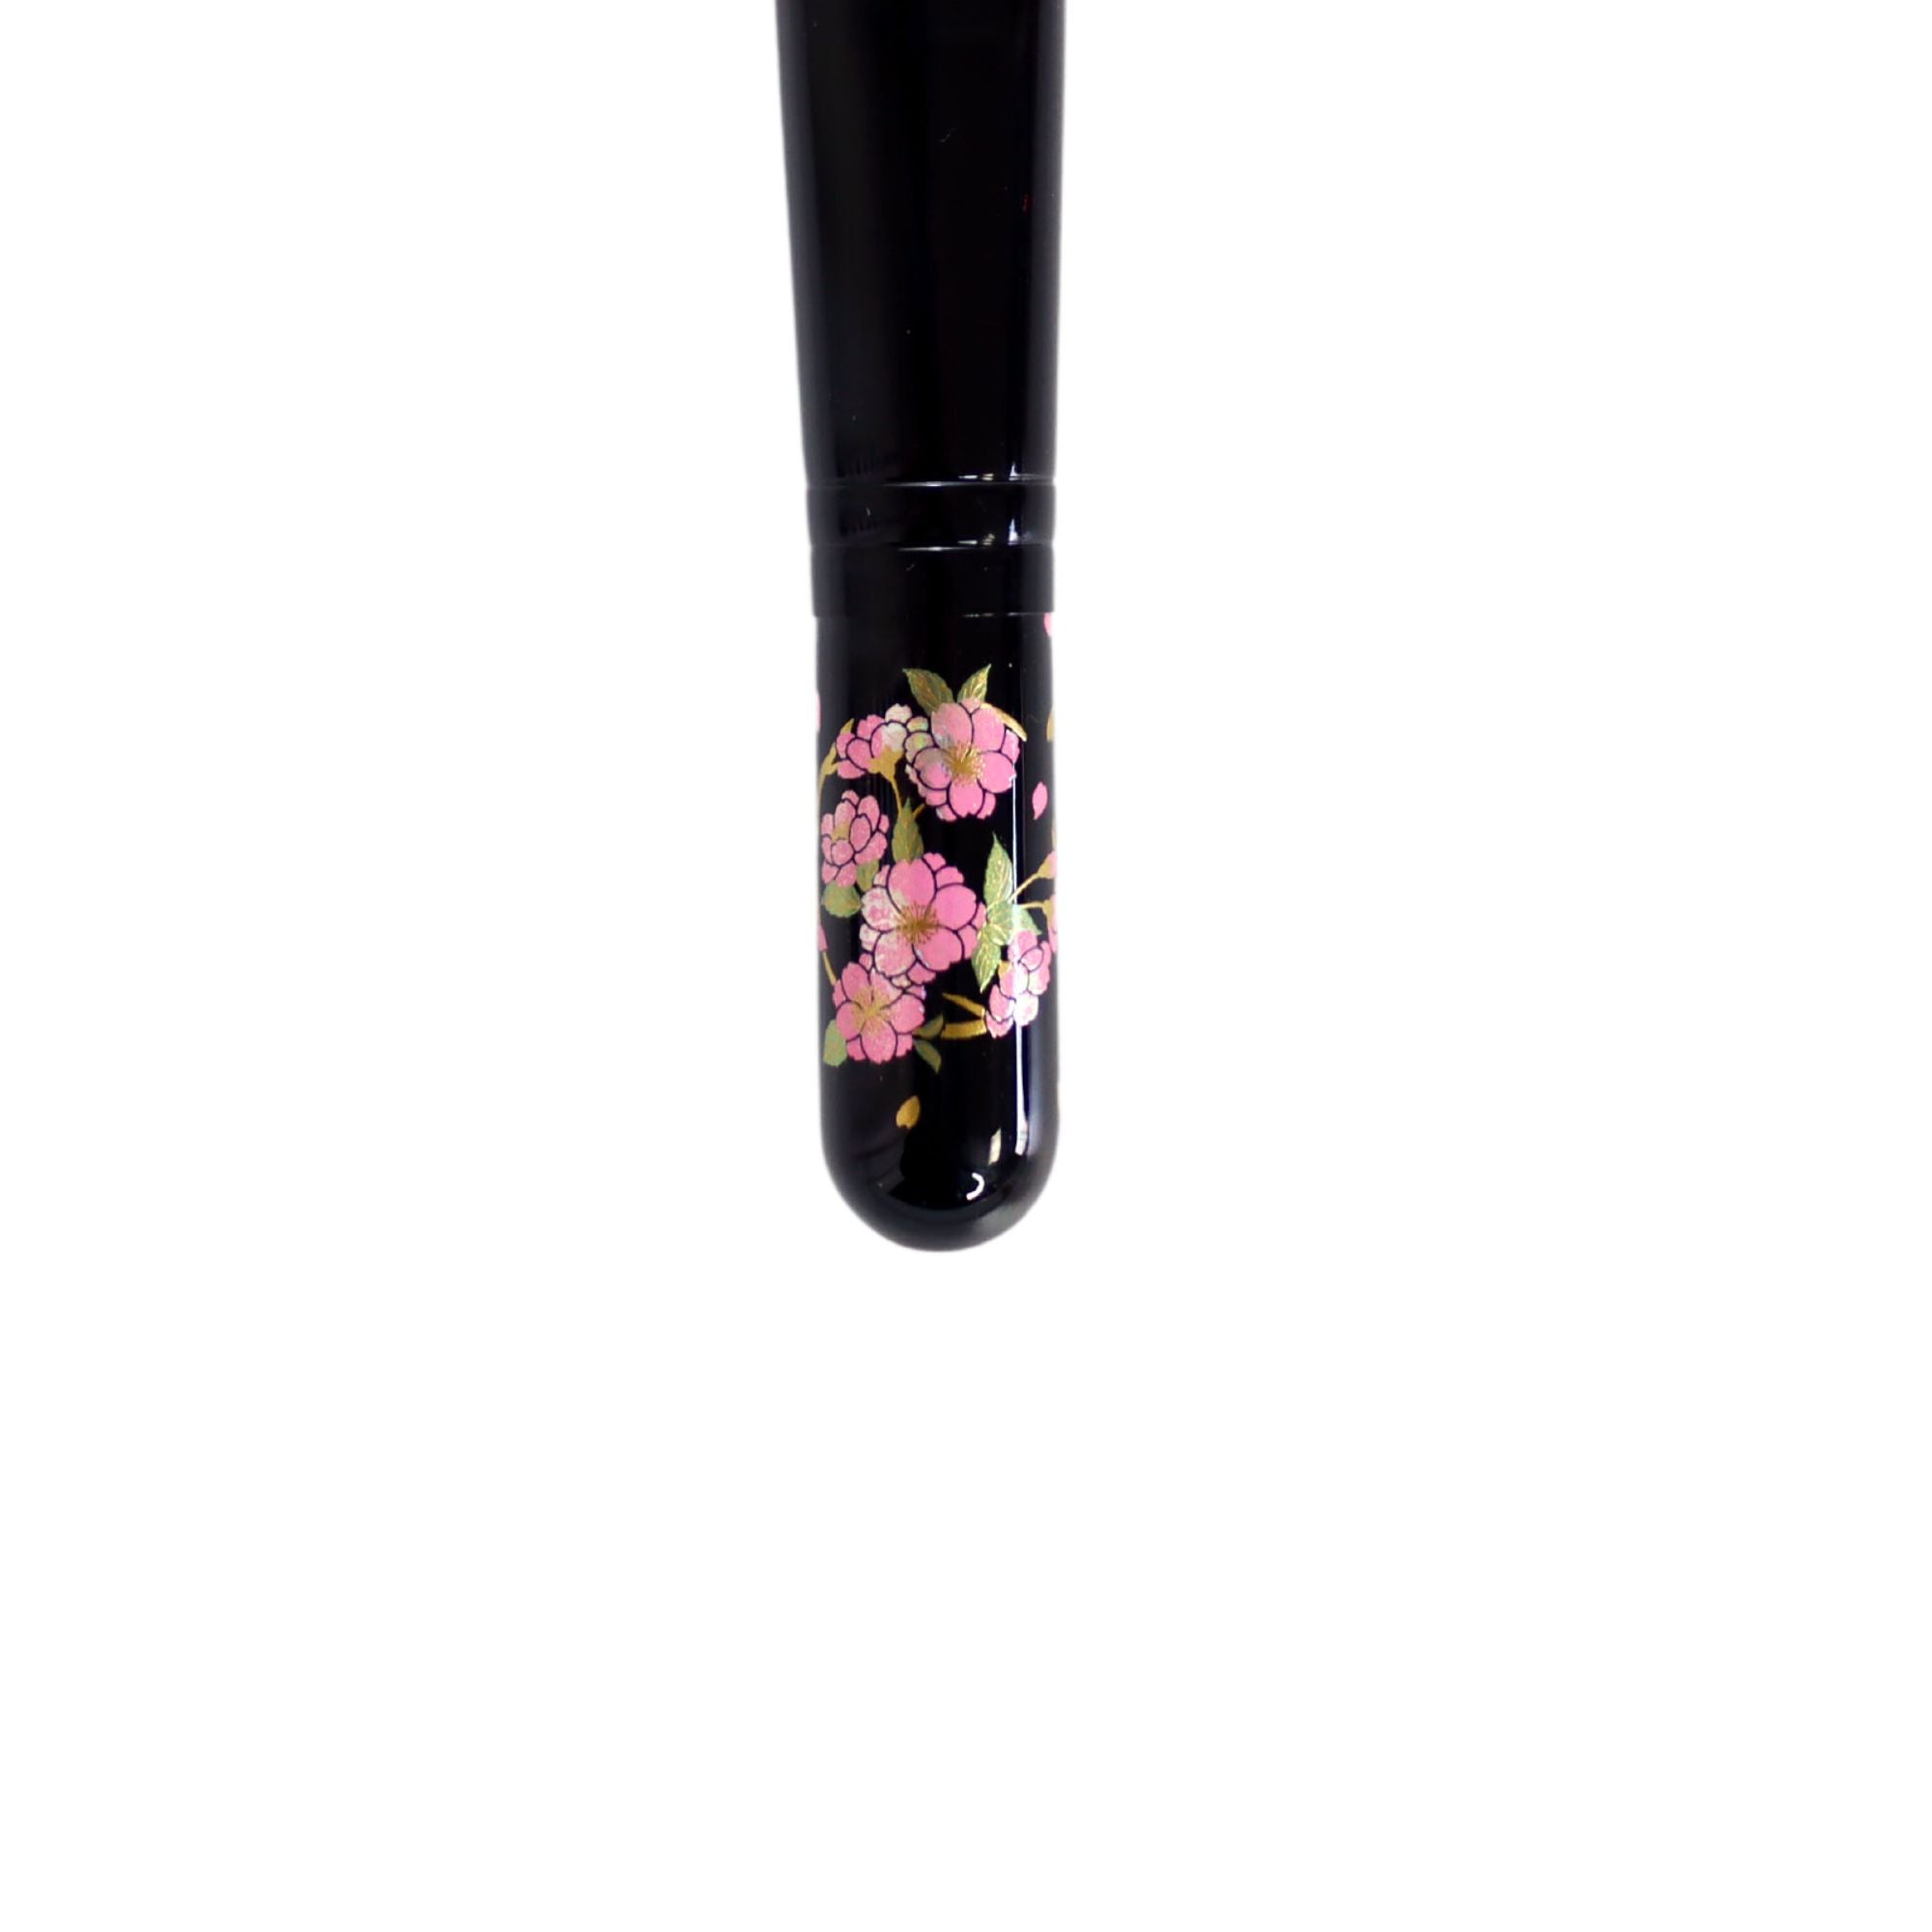 Eihodo RE8-3 Cheek Brush (Peony Sakura 牡丹桜), Makie Design - Fude Beauty, Japanese Makeup Brushes